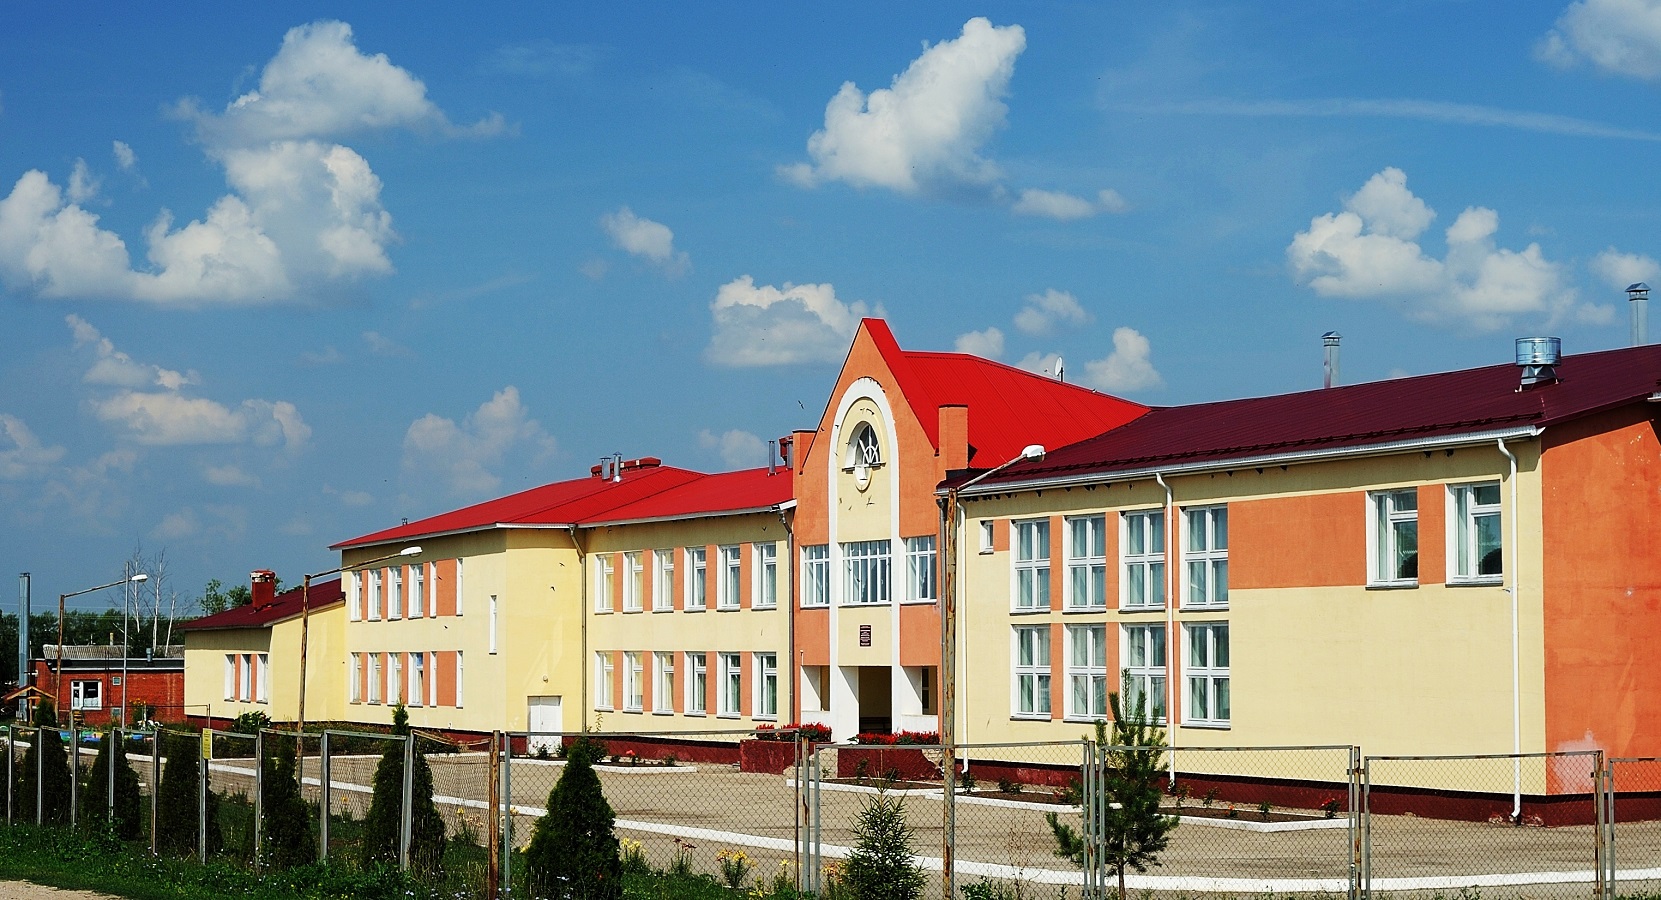  Муниципальное бюджетное общеобразовательное учреждение  &amp;quot;Вослебовская средняя общеобразовательная школа&amp;quot; Скопинского района Рязанской области.